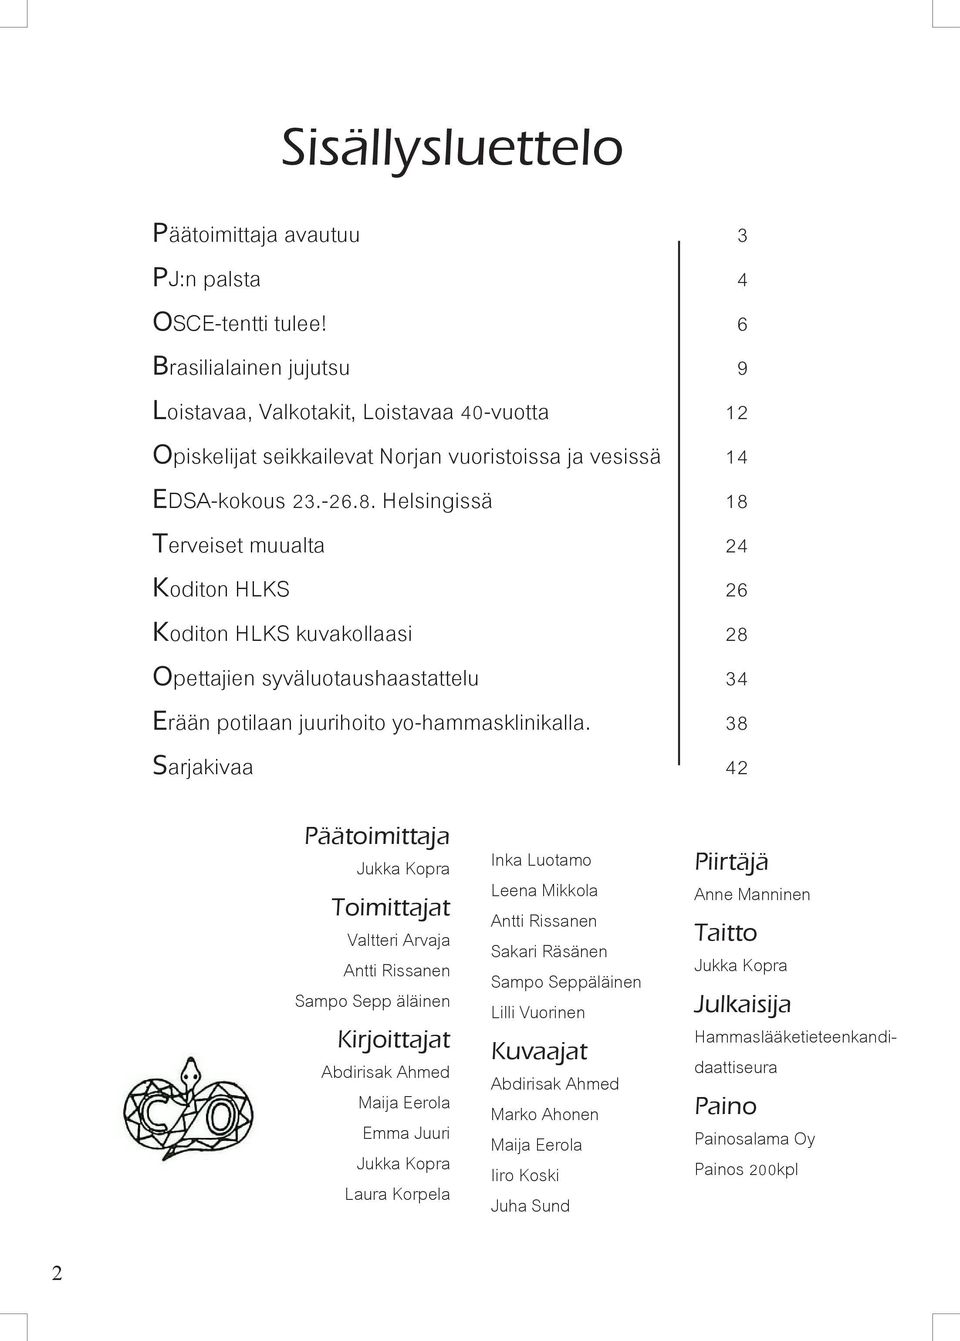 Helsingissä 18 Terveiset muualta 24 Koditon HLKS 26 Koditon HLKS kuvakollaasi 28 Opettajien syväluotaushaastattelu 34 Erään potilaan juurihoito yo-hammasklinikalla.